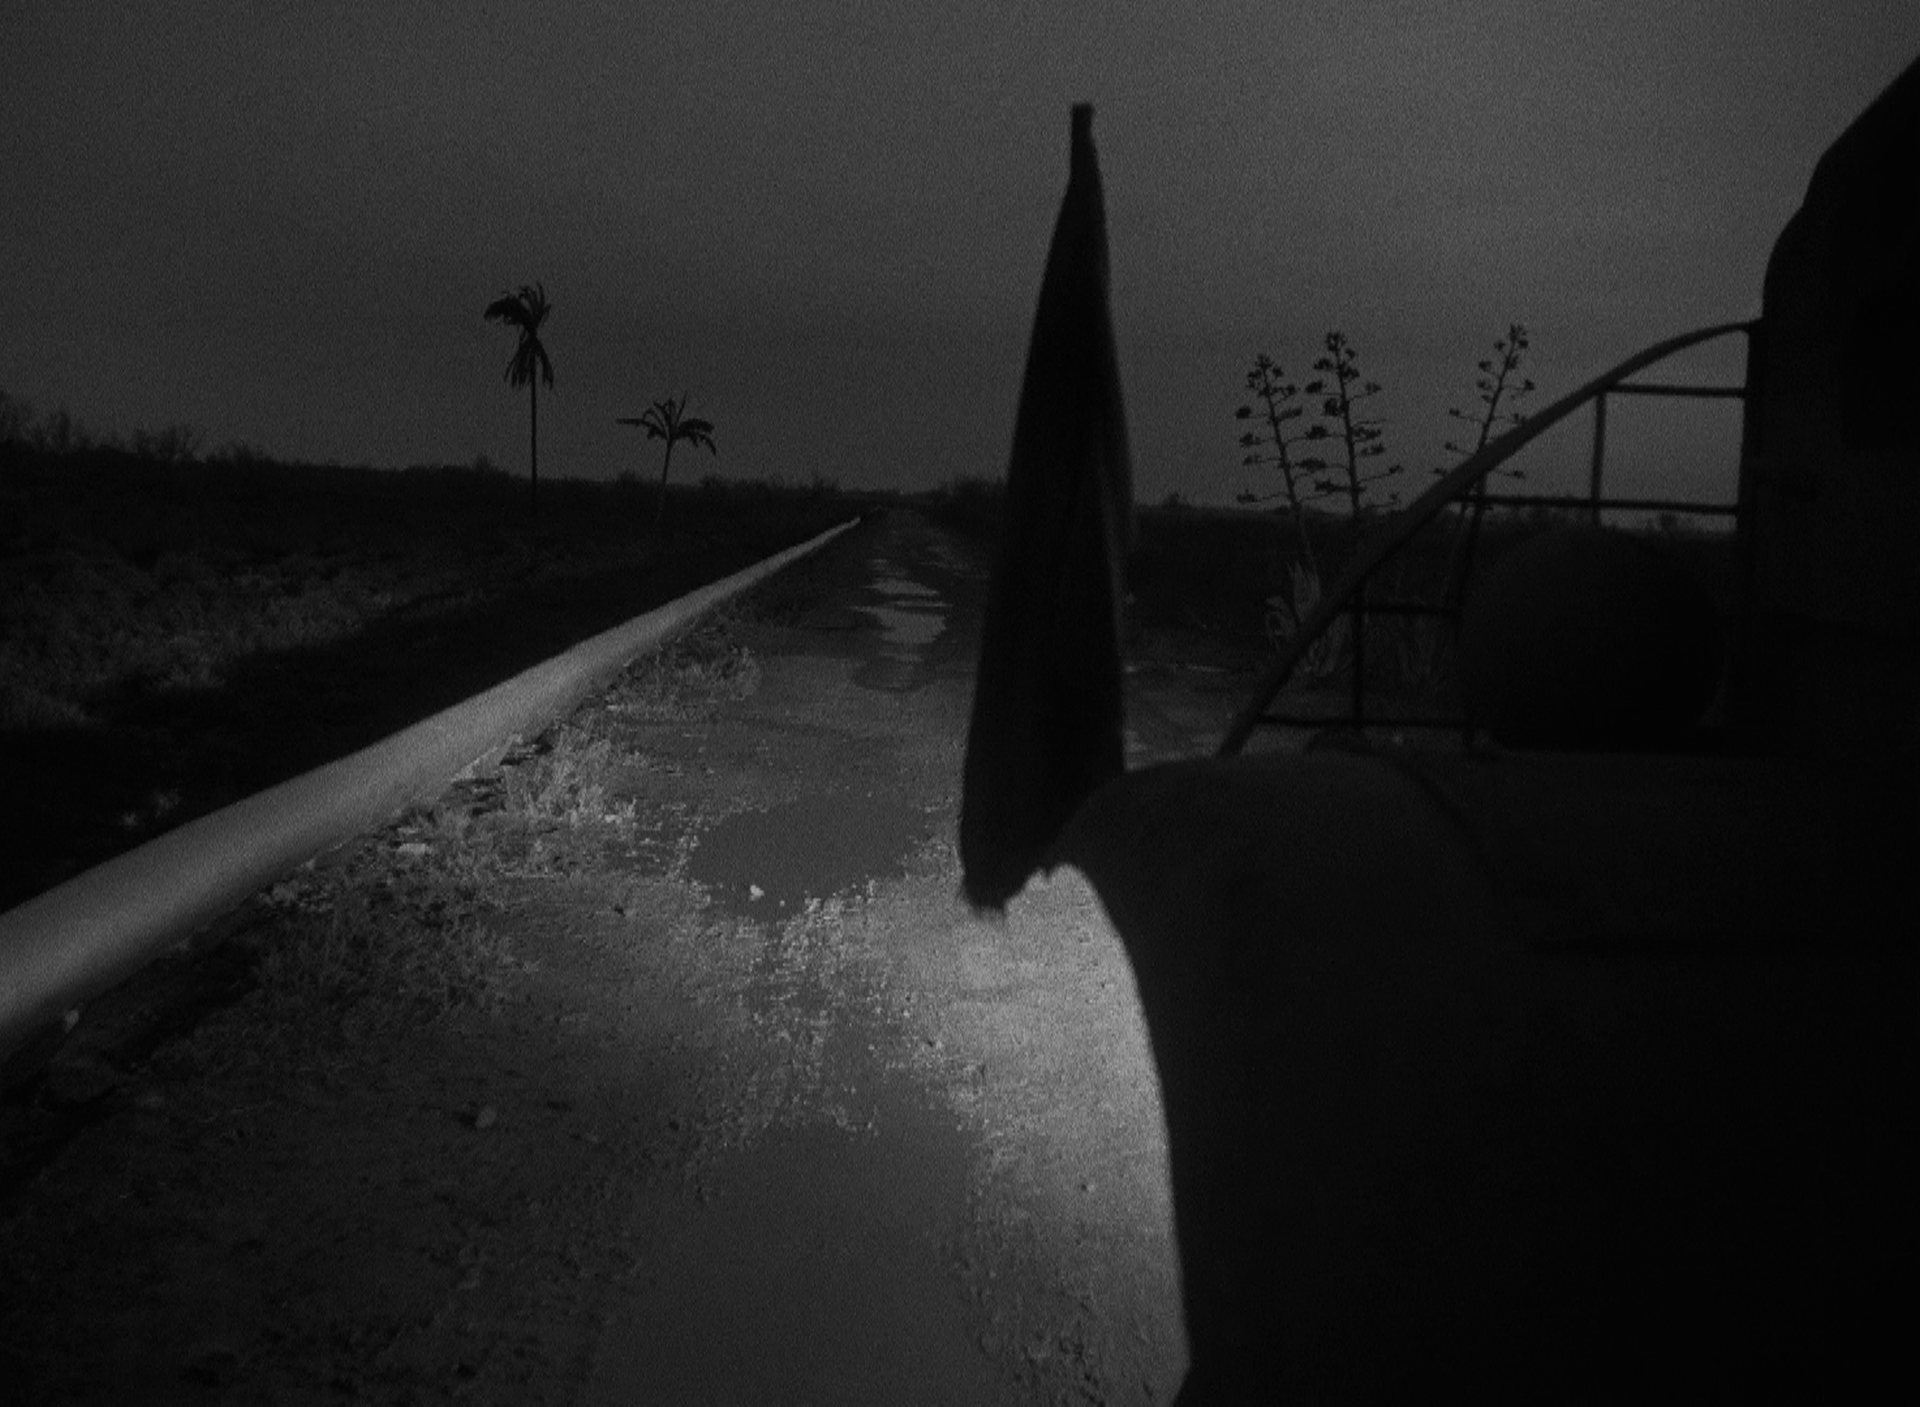 Nachtfahrt, Blick vom vorderen linken Kotflügel auf die unwegsame Straße, im Hintergrund zwei einsame Palmen.